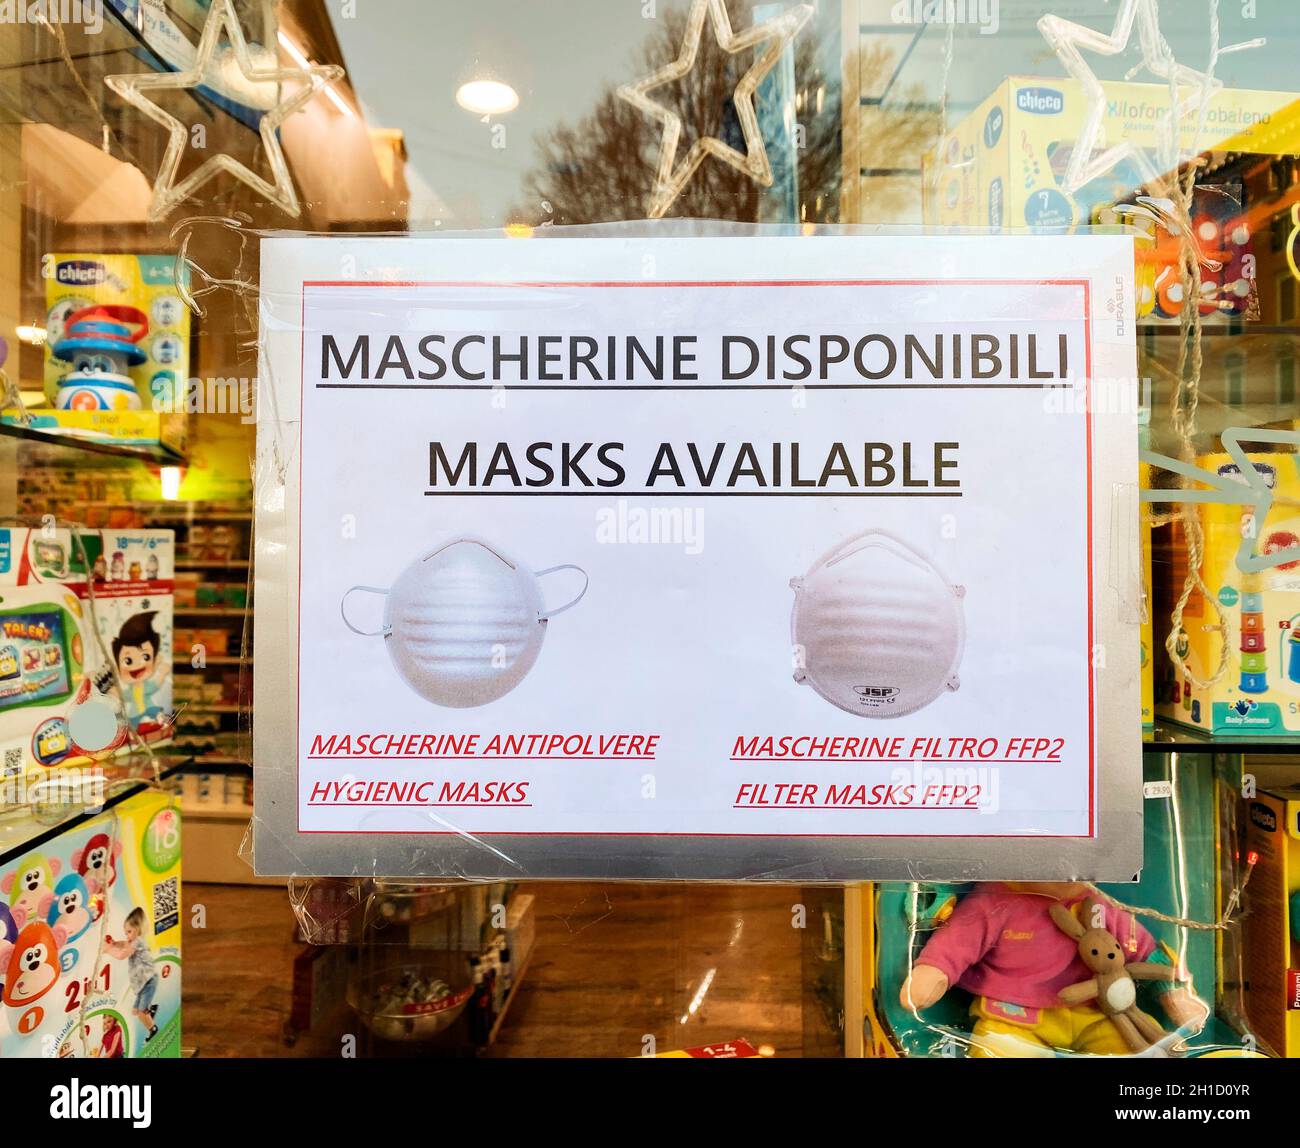 Roma, Italia, febbraio 2020: Un cartello esposto nella finestra di una farmacia italiana che indica la disponibilità di maschere igieniche per contrastare il coron Foto Stock